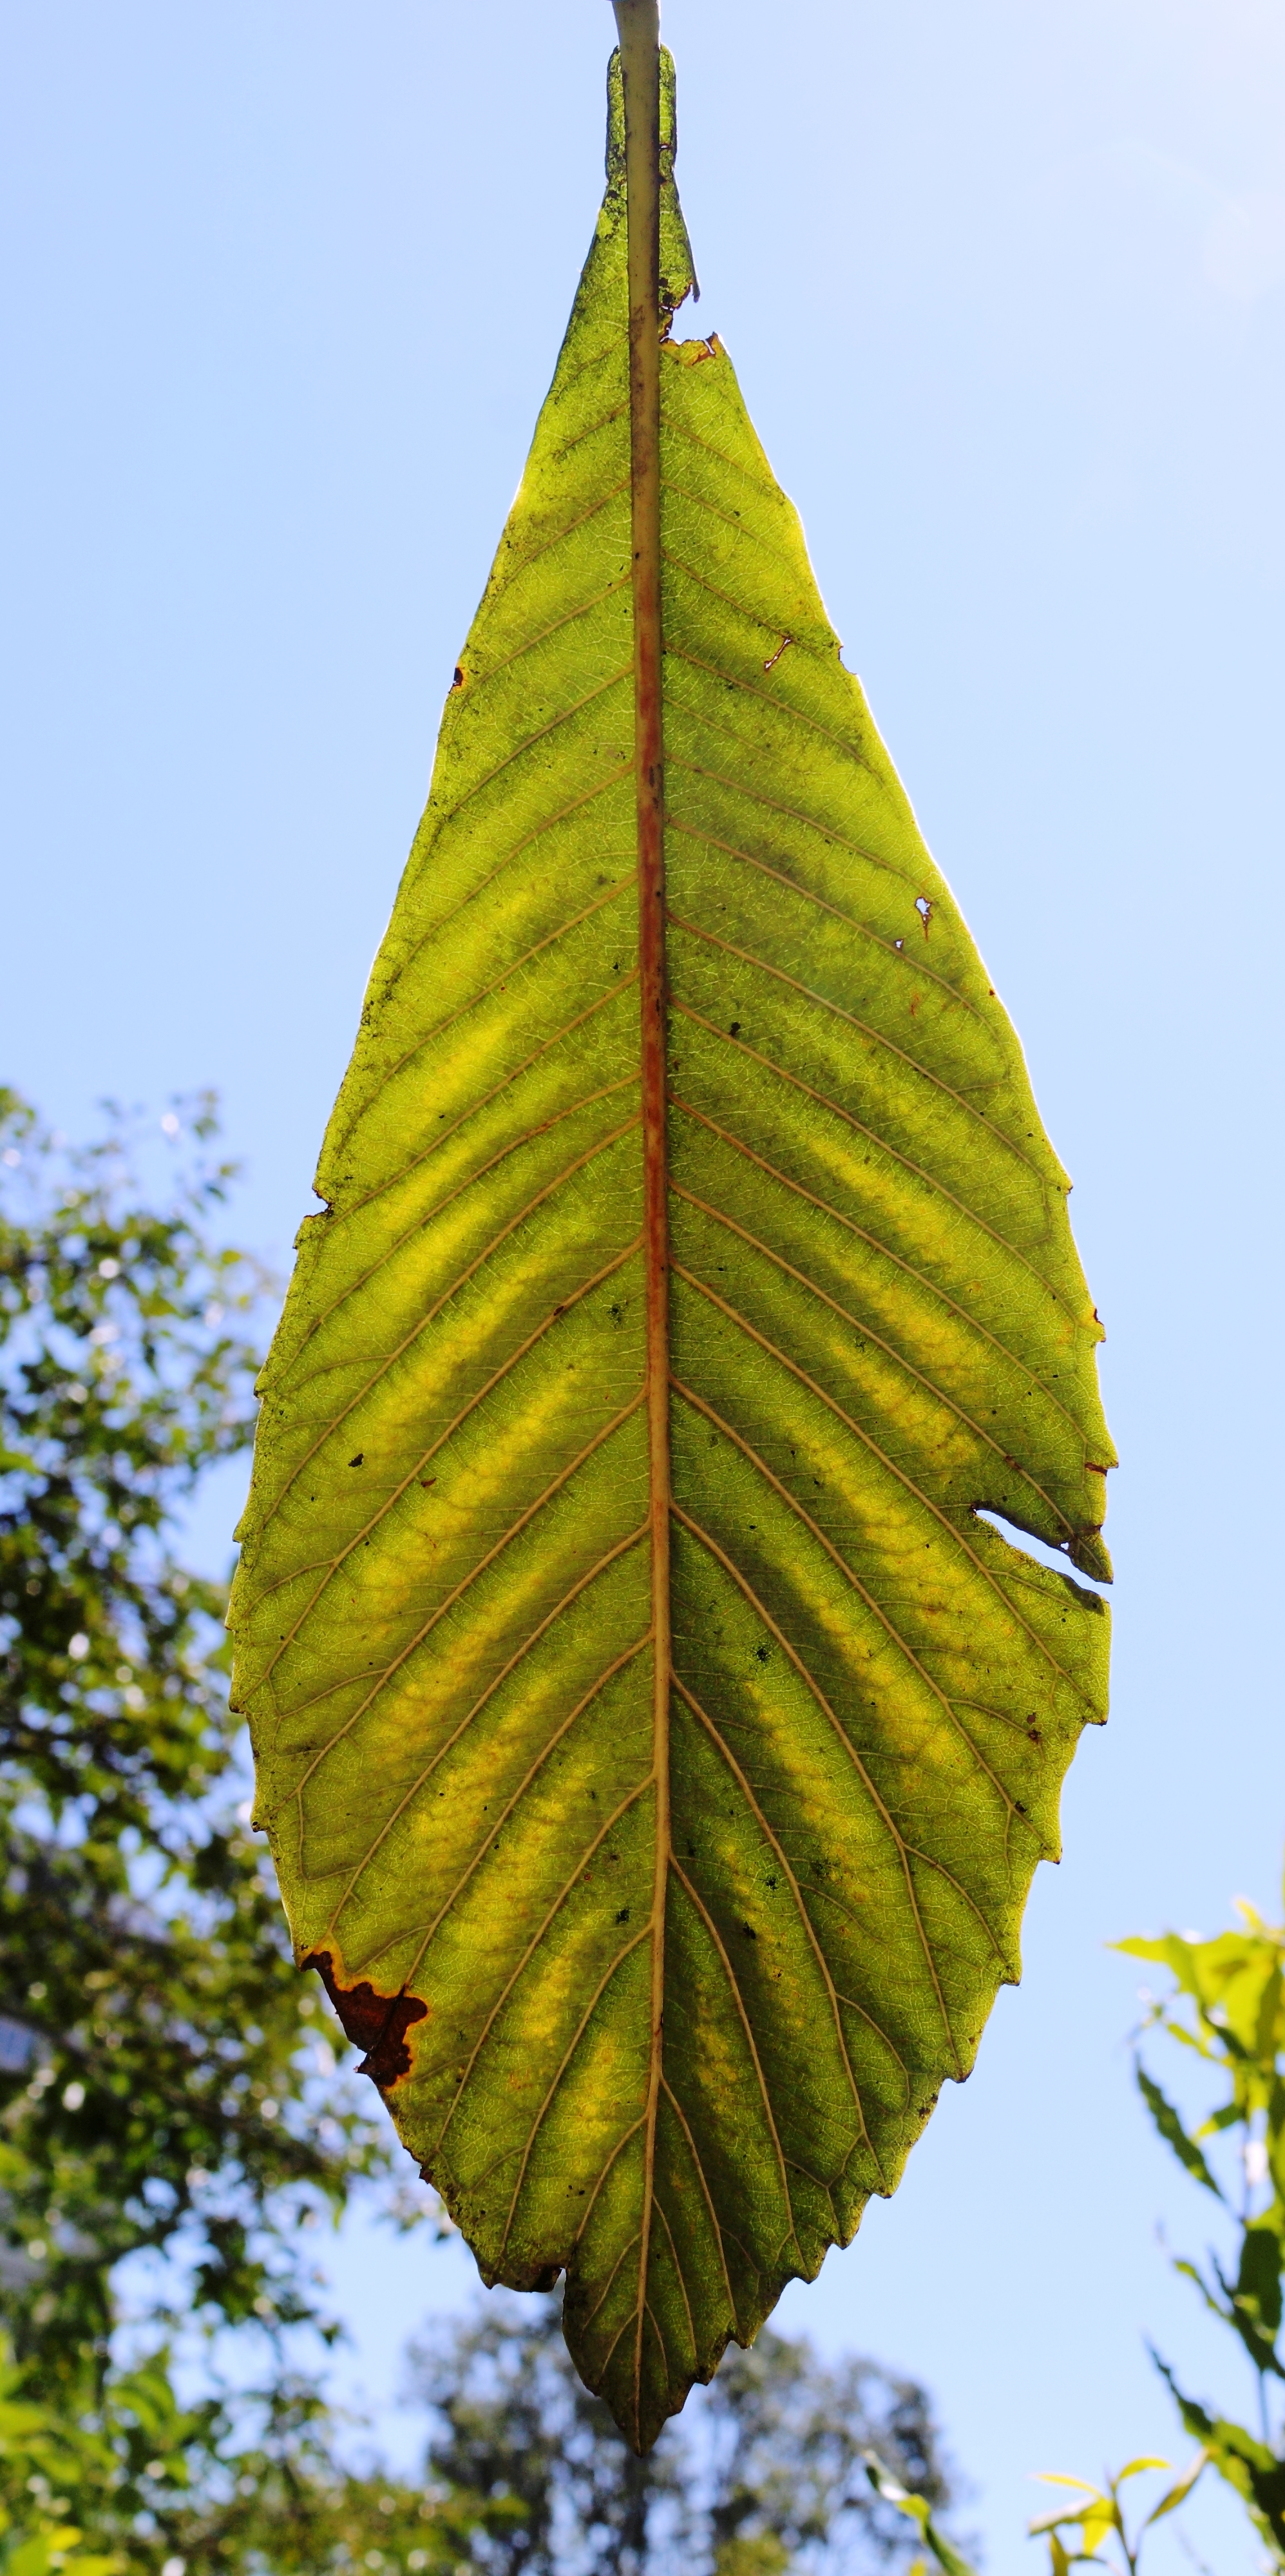 The leaf of Loquat